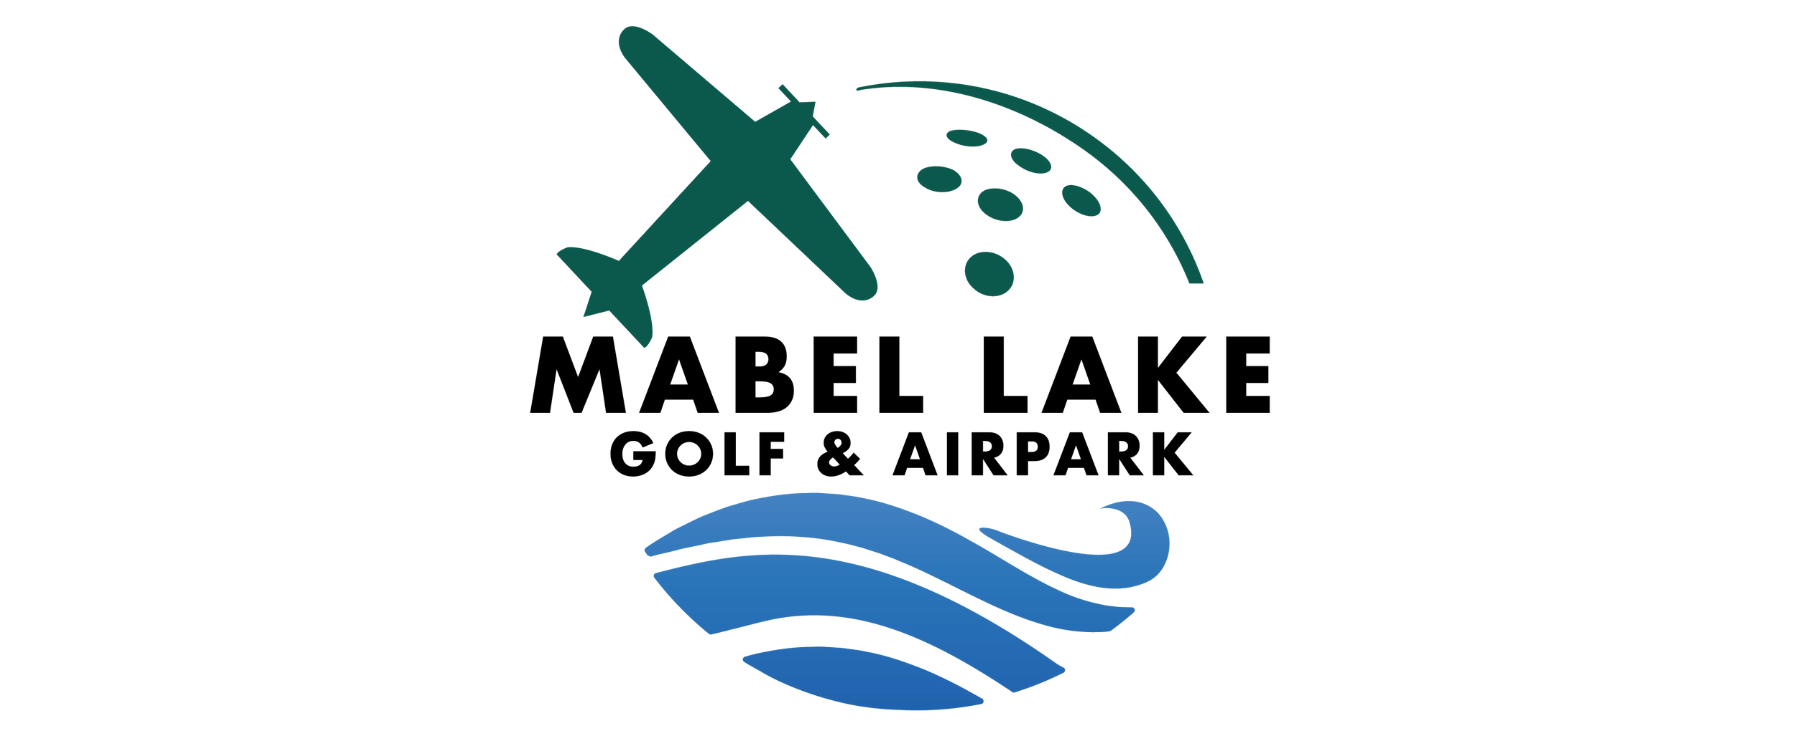 Mabel Lake